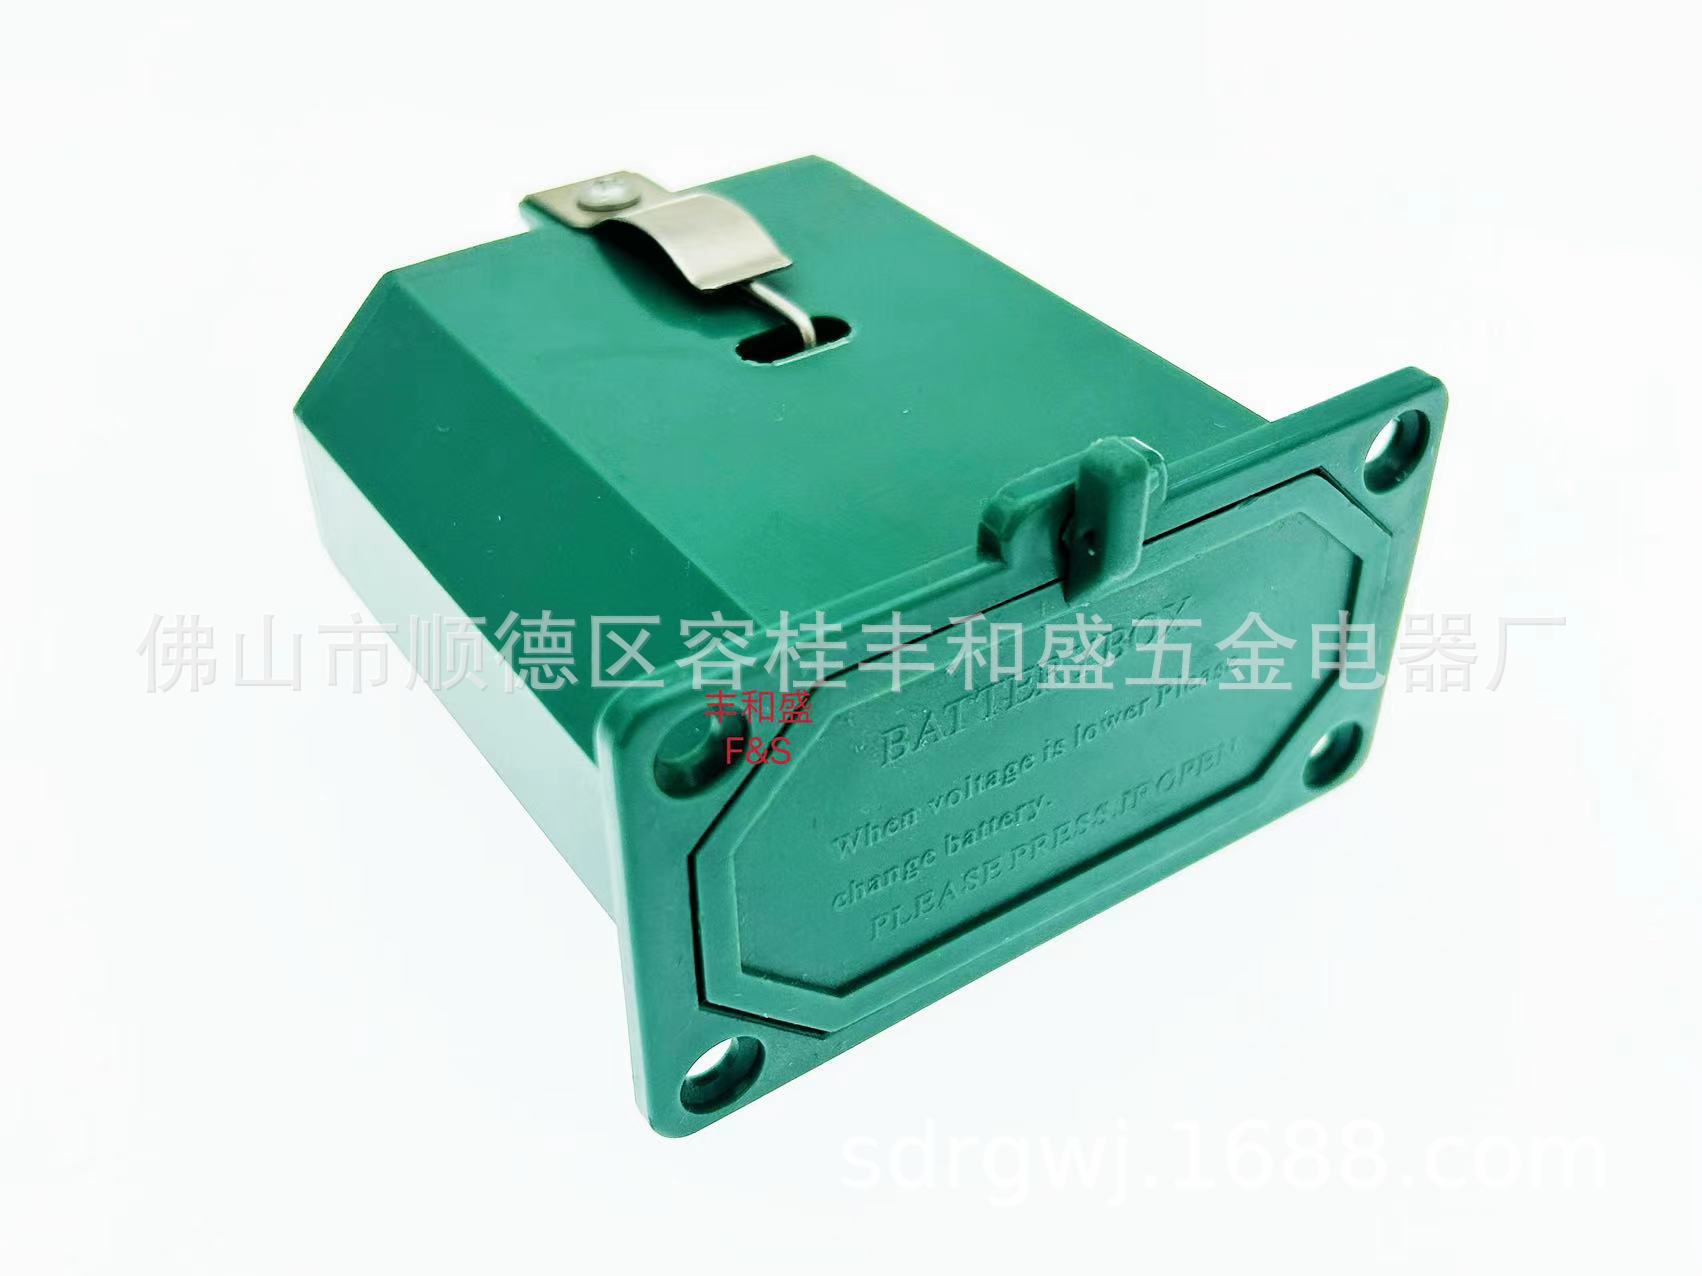 适用于华帝热水器的电池盒-外贸热水器配件